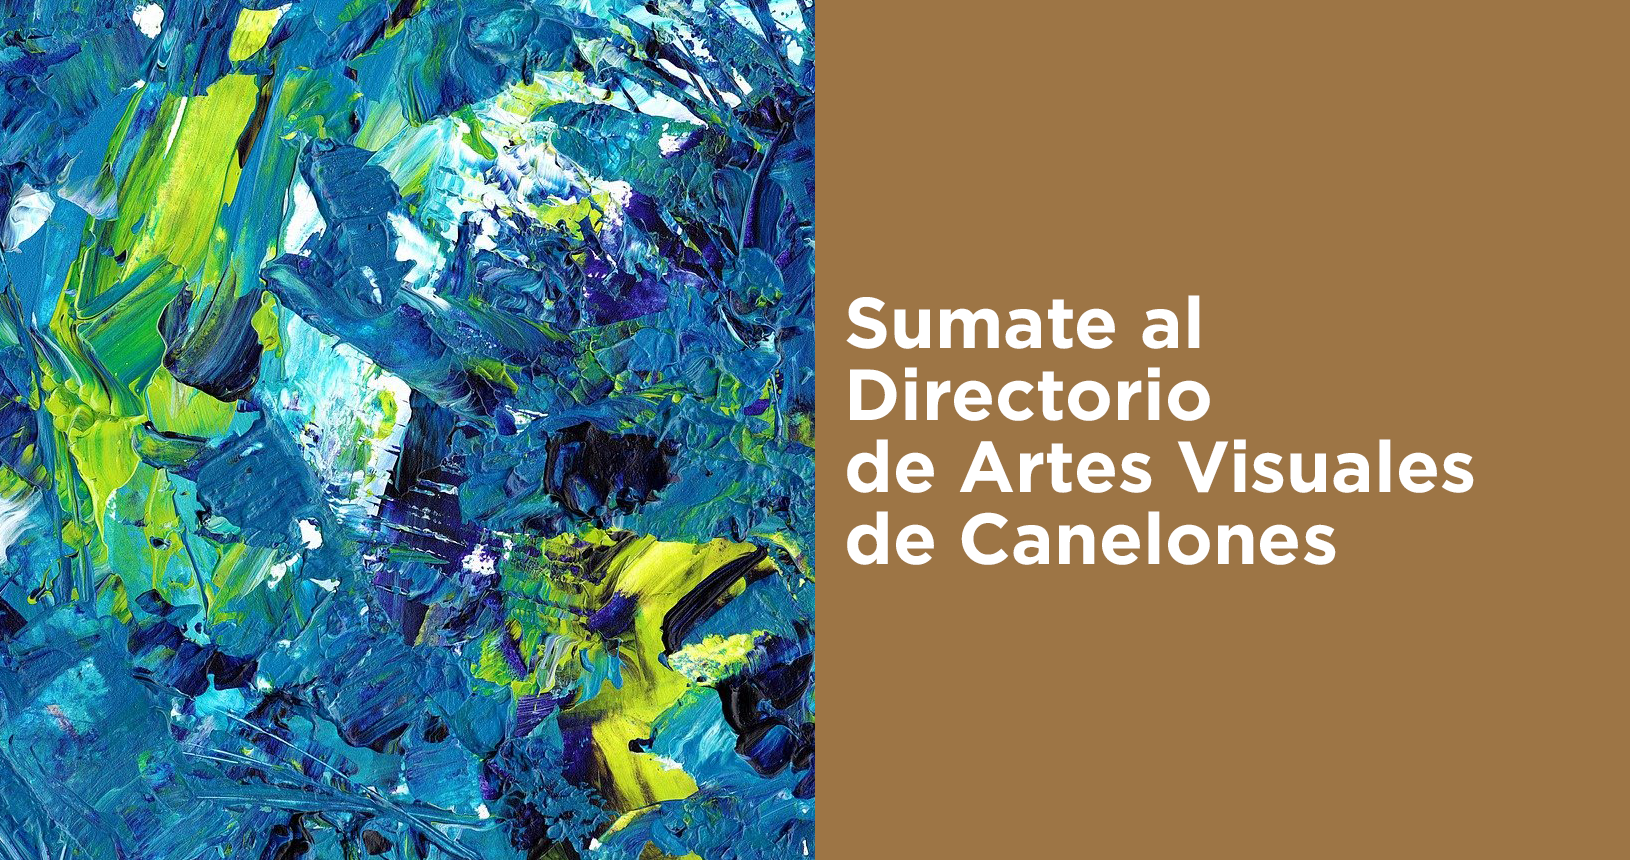 Sumate al Directorio de Artes Visuales de Canelones